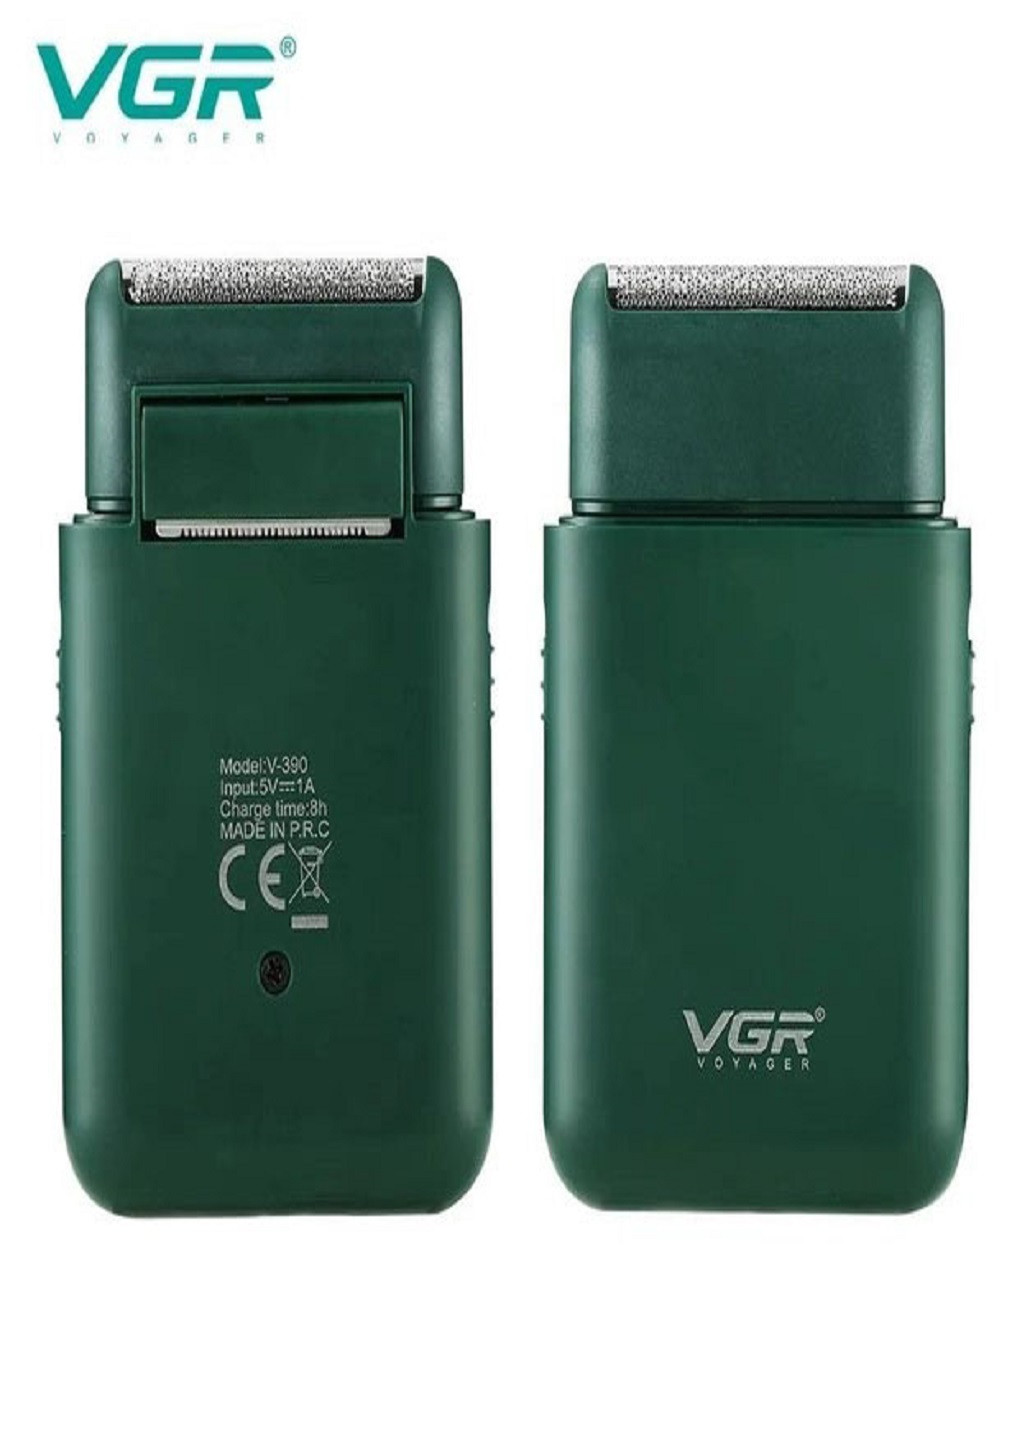 Электробритва V-390 бритва аккумуляторная VGR (277979650)